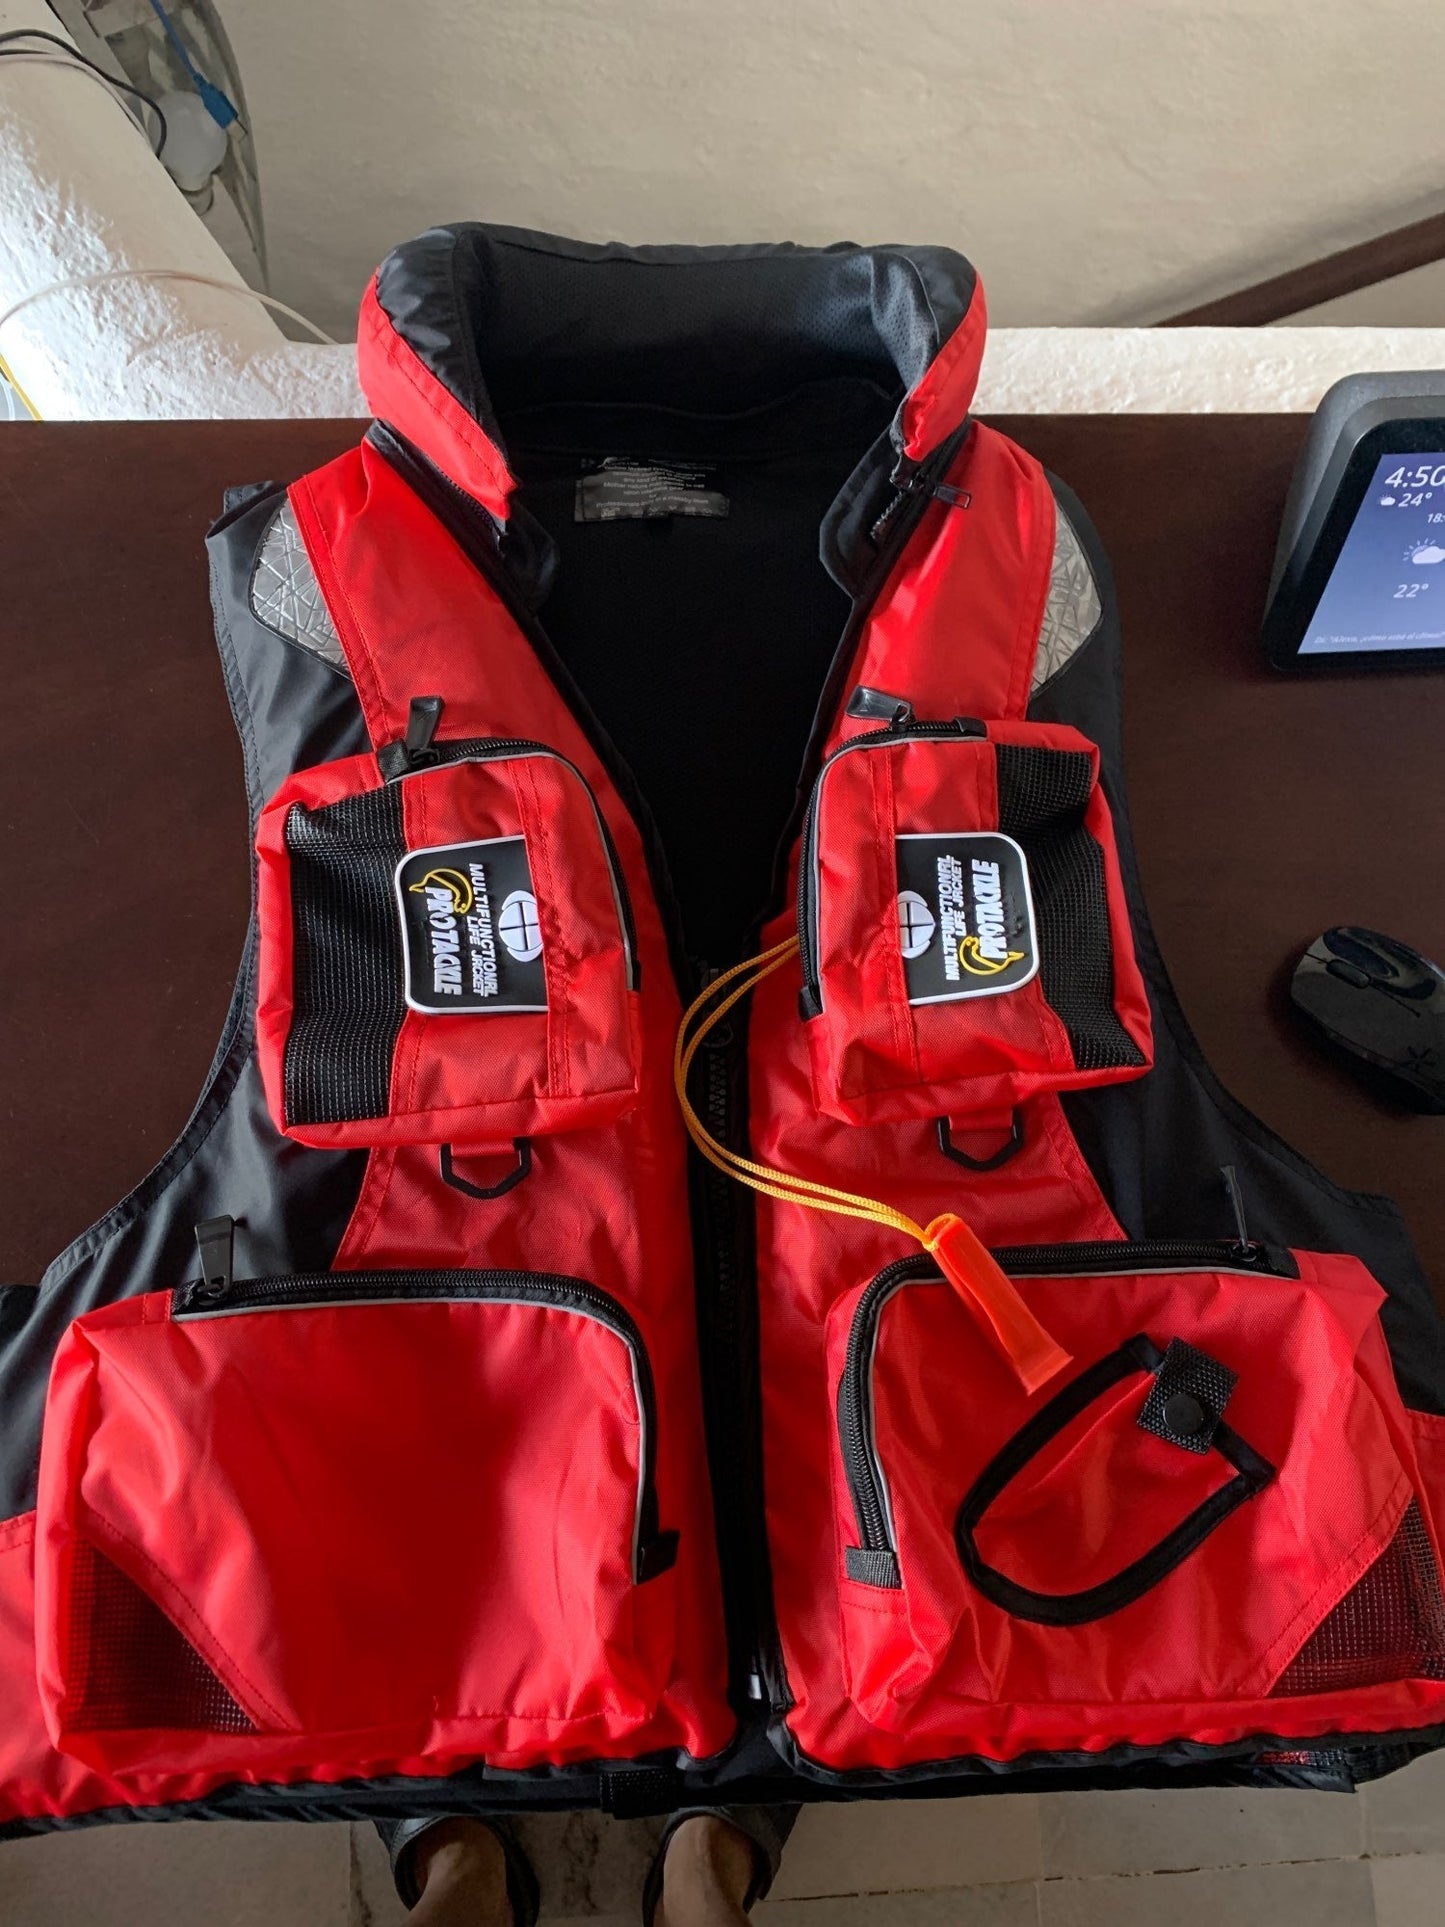 Adult Life Jacket, Adjustable Buoyancy Aid - Watersports Life vest / Life Jacket , Boating, Sailing, Fishing..